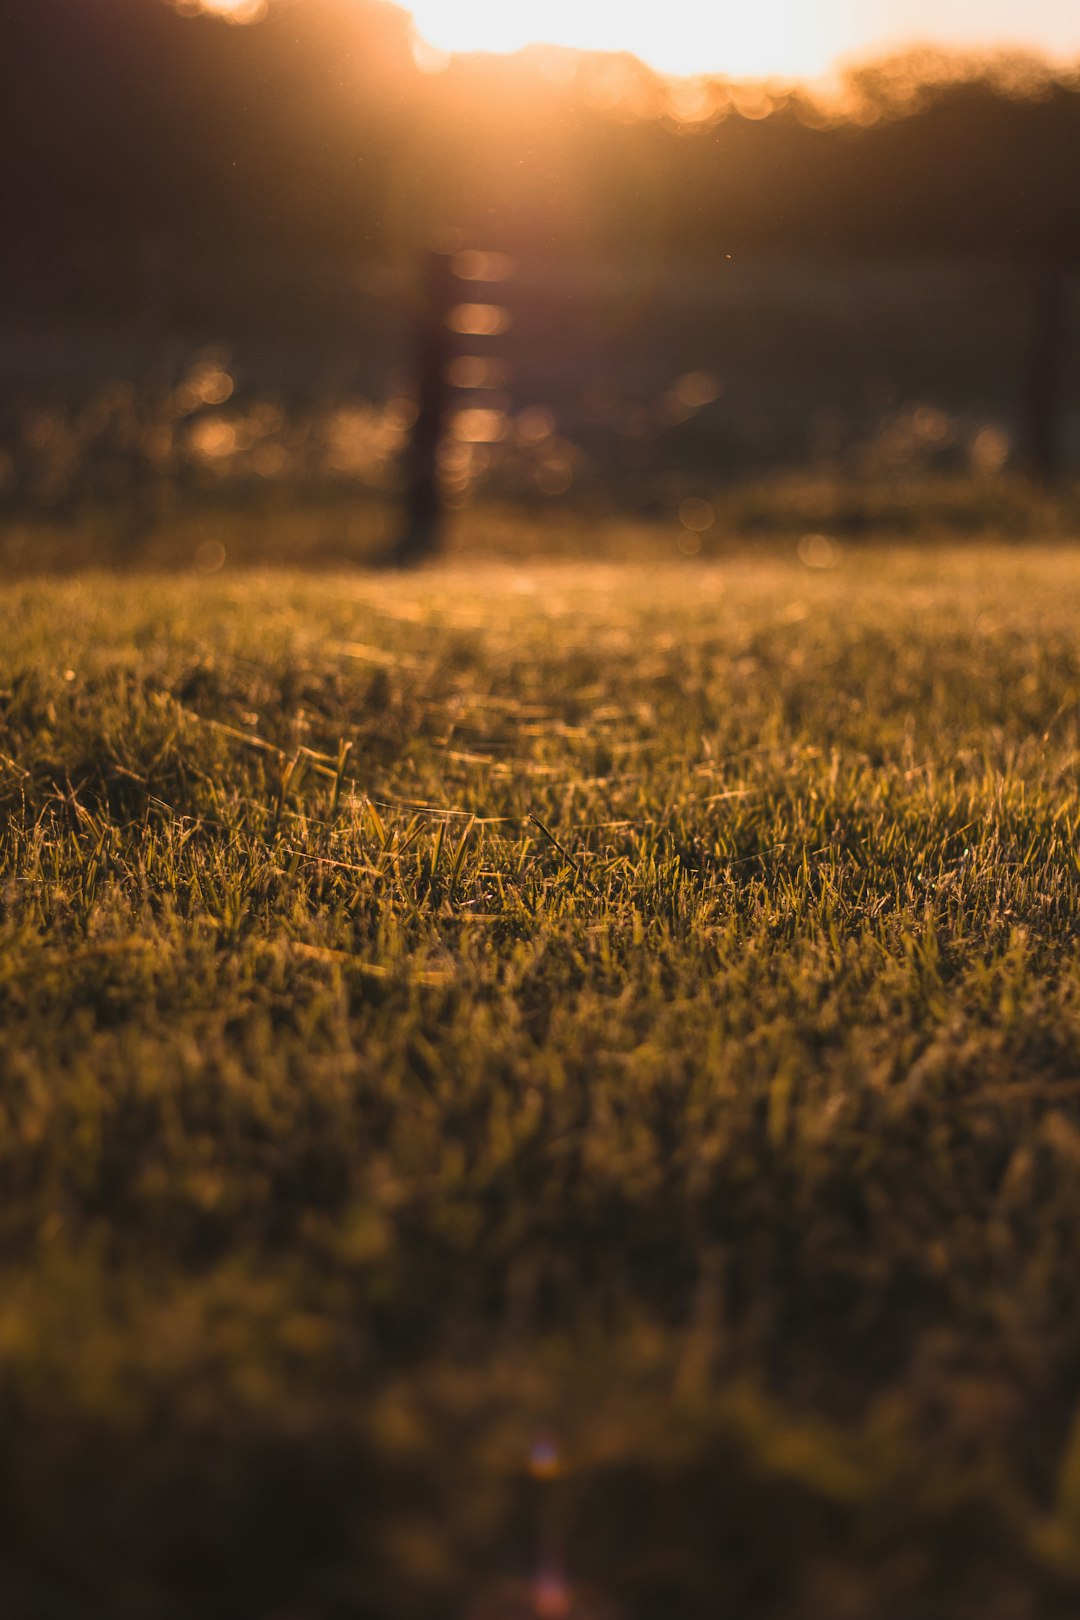 focus photo of green grass